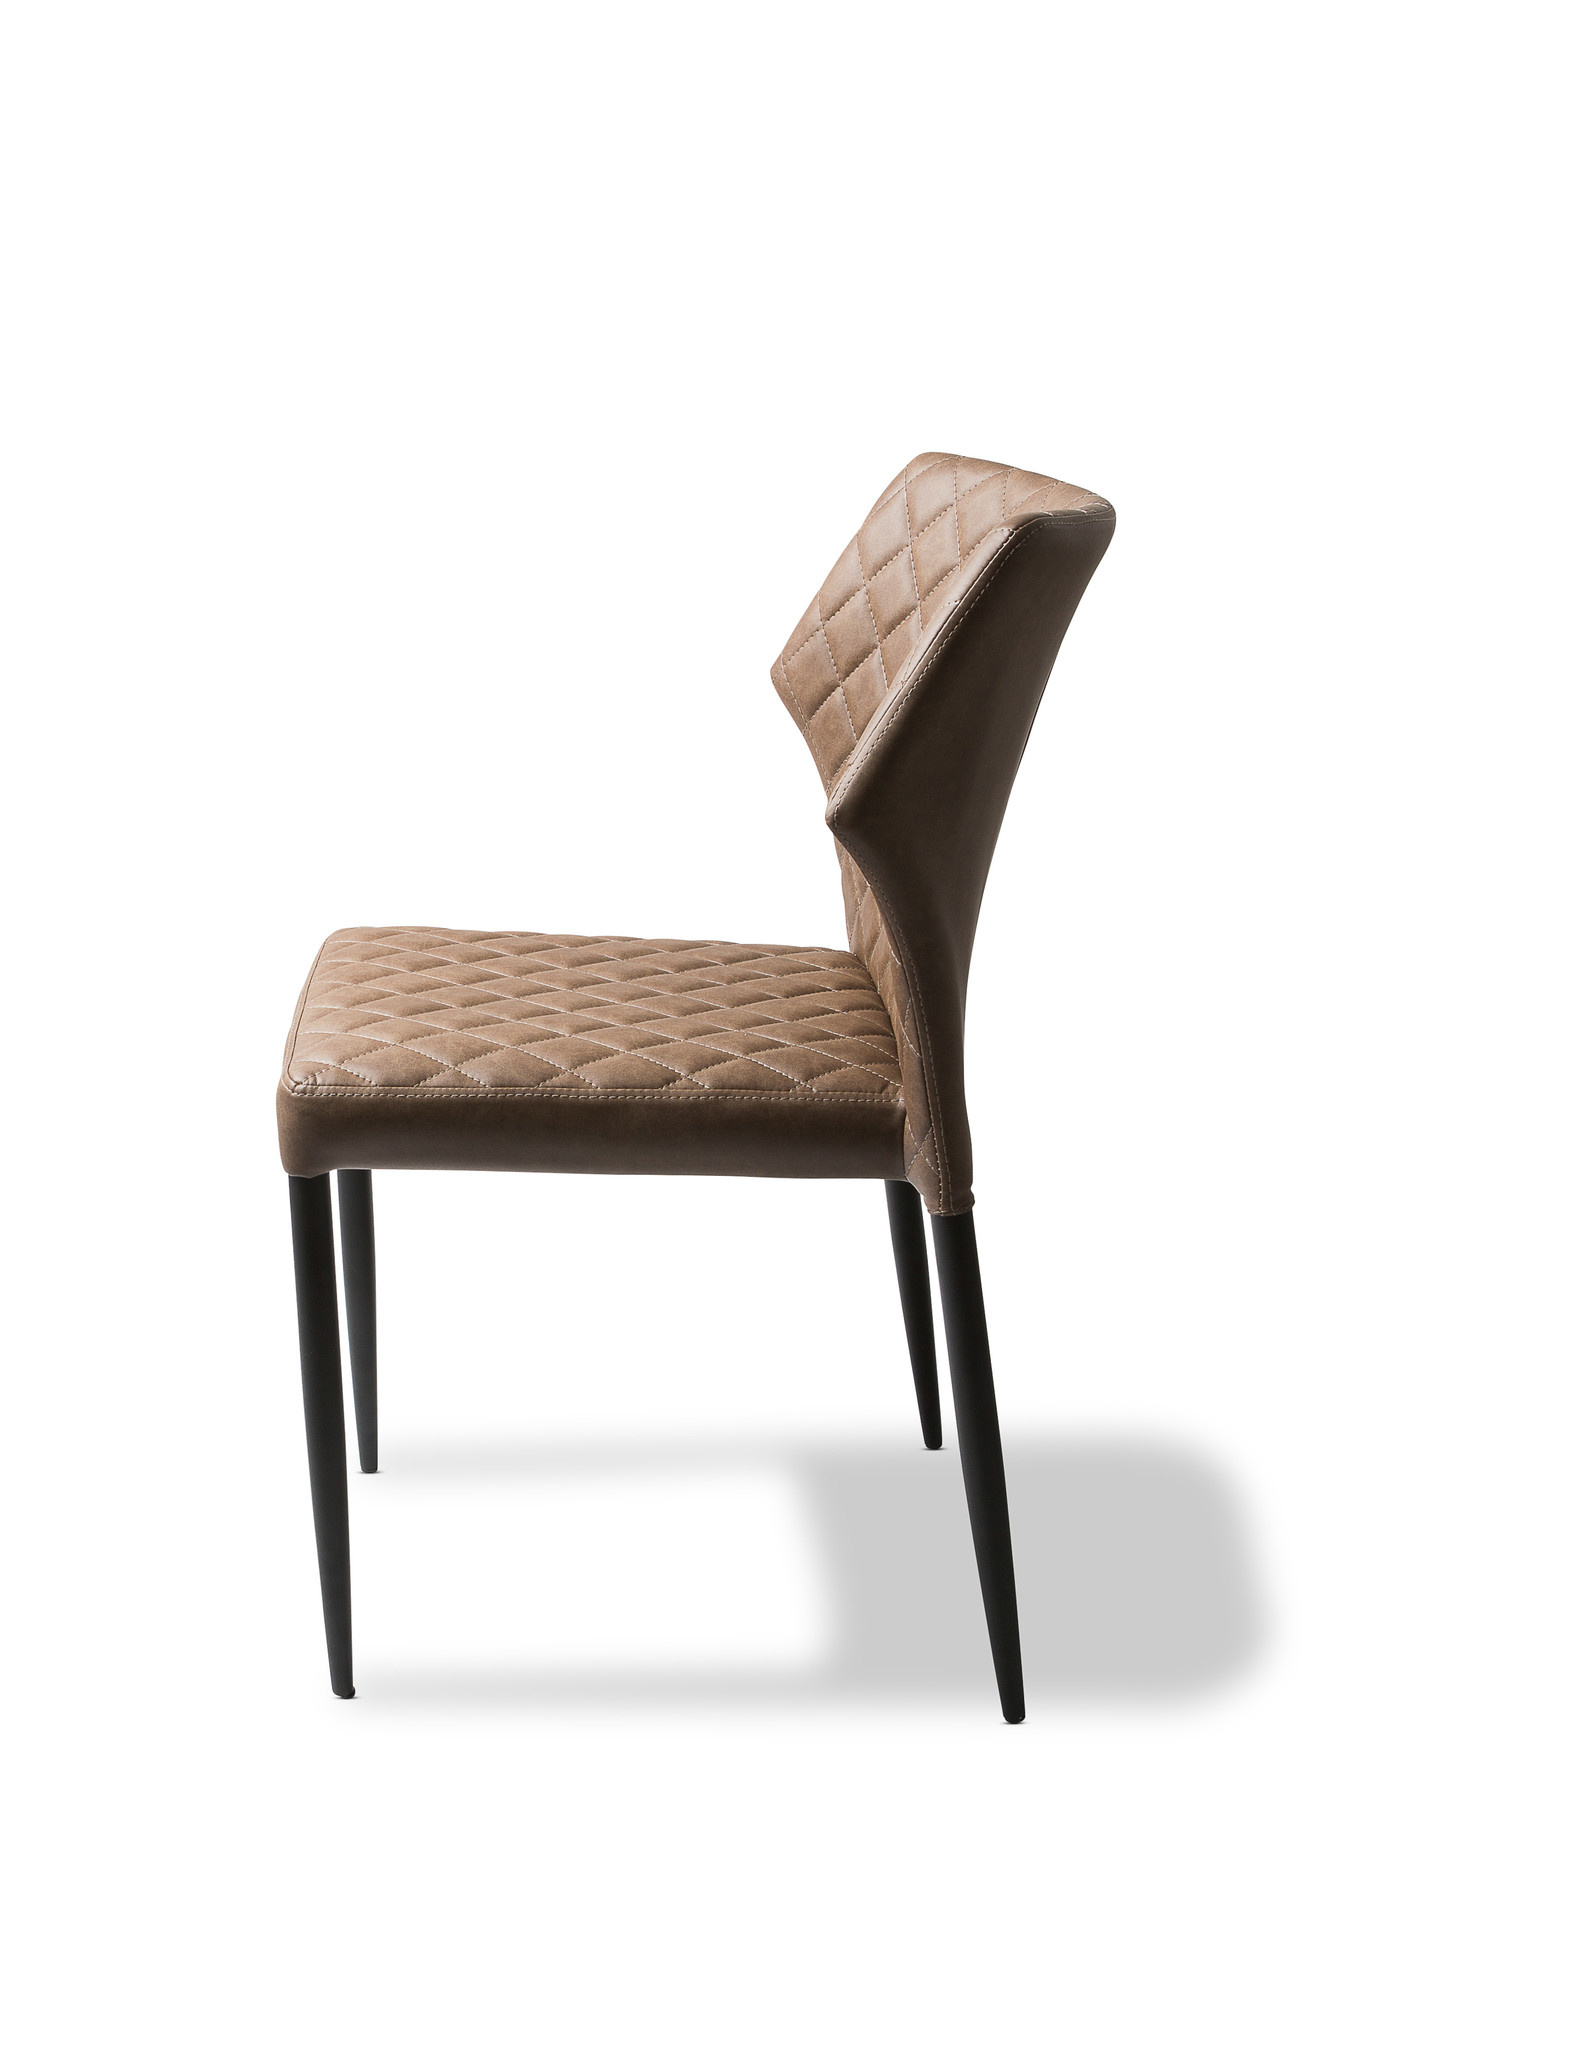 Louis chaise empilable, Cognac, revêtement en cuir synthétique, ignifuge, 49x57,5x81,5cm (BxTxH), 52001